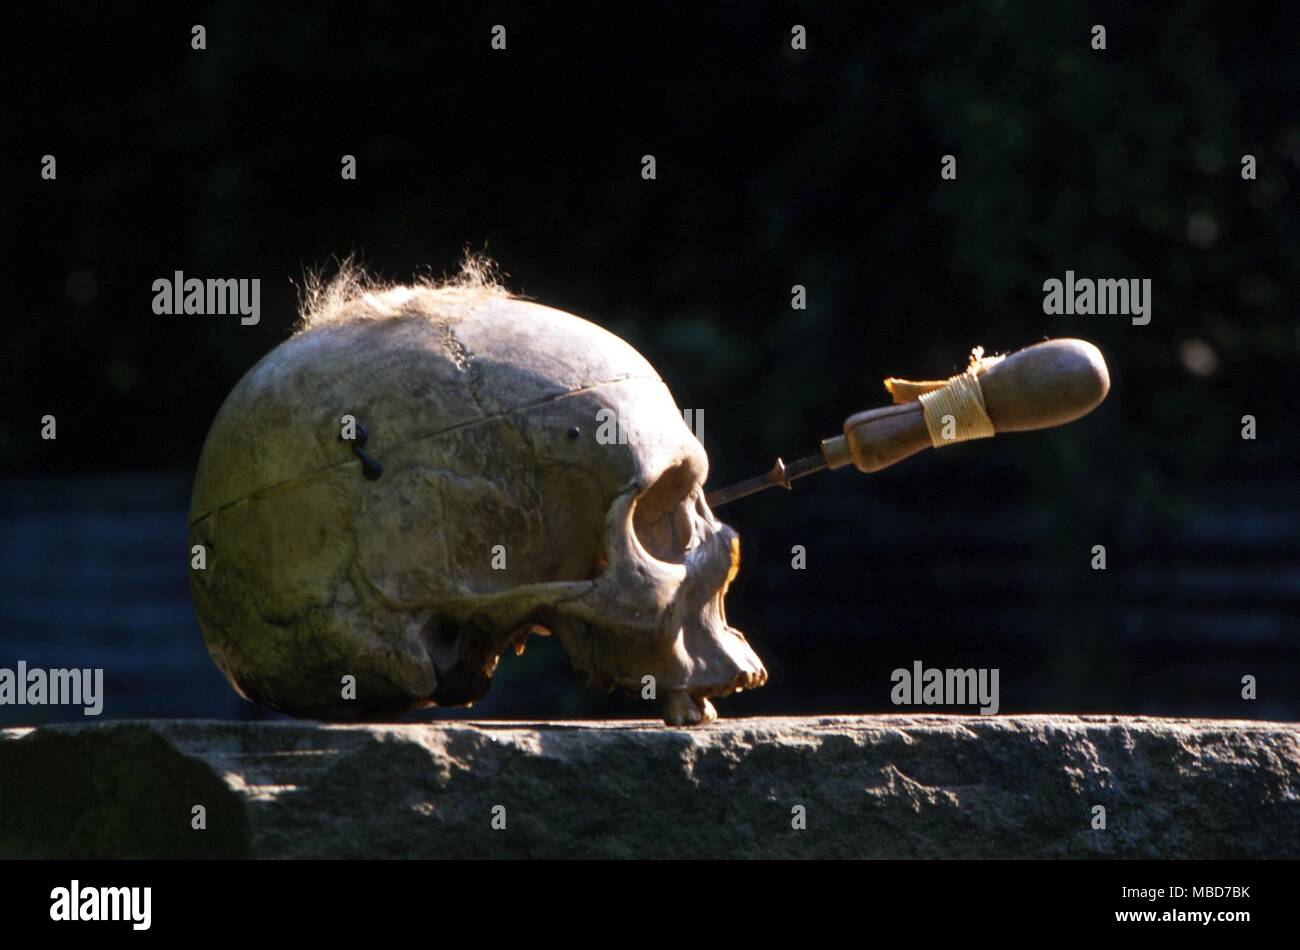 La Maledizione di essere umano a morte per mezzo di infilzare un teschio con un punto metallico portante il nome della vittima. Foto Stock